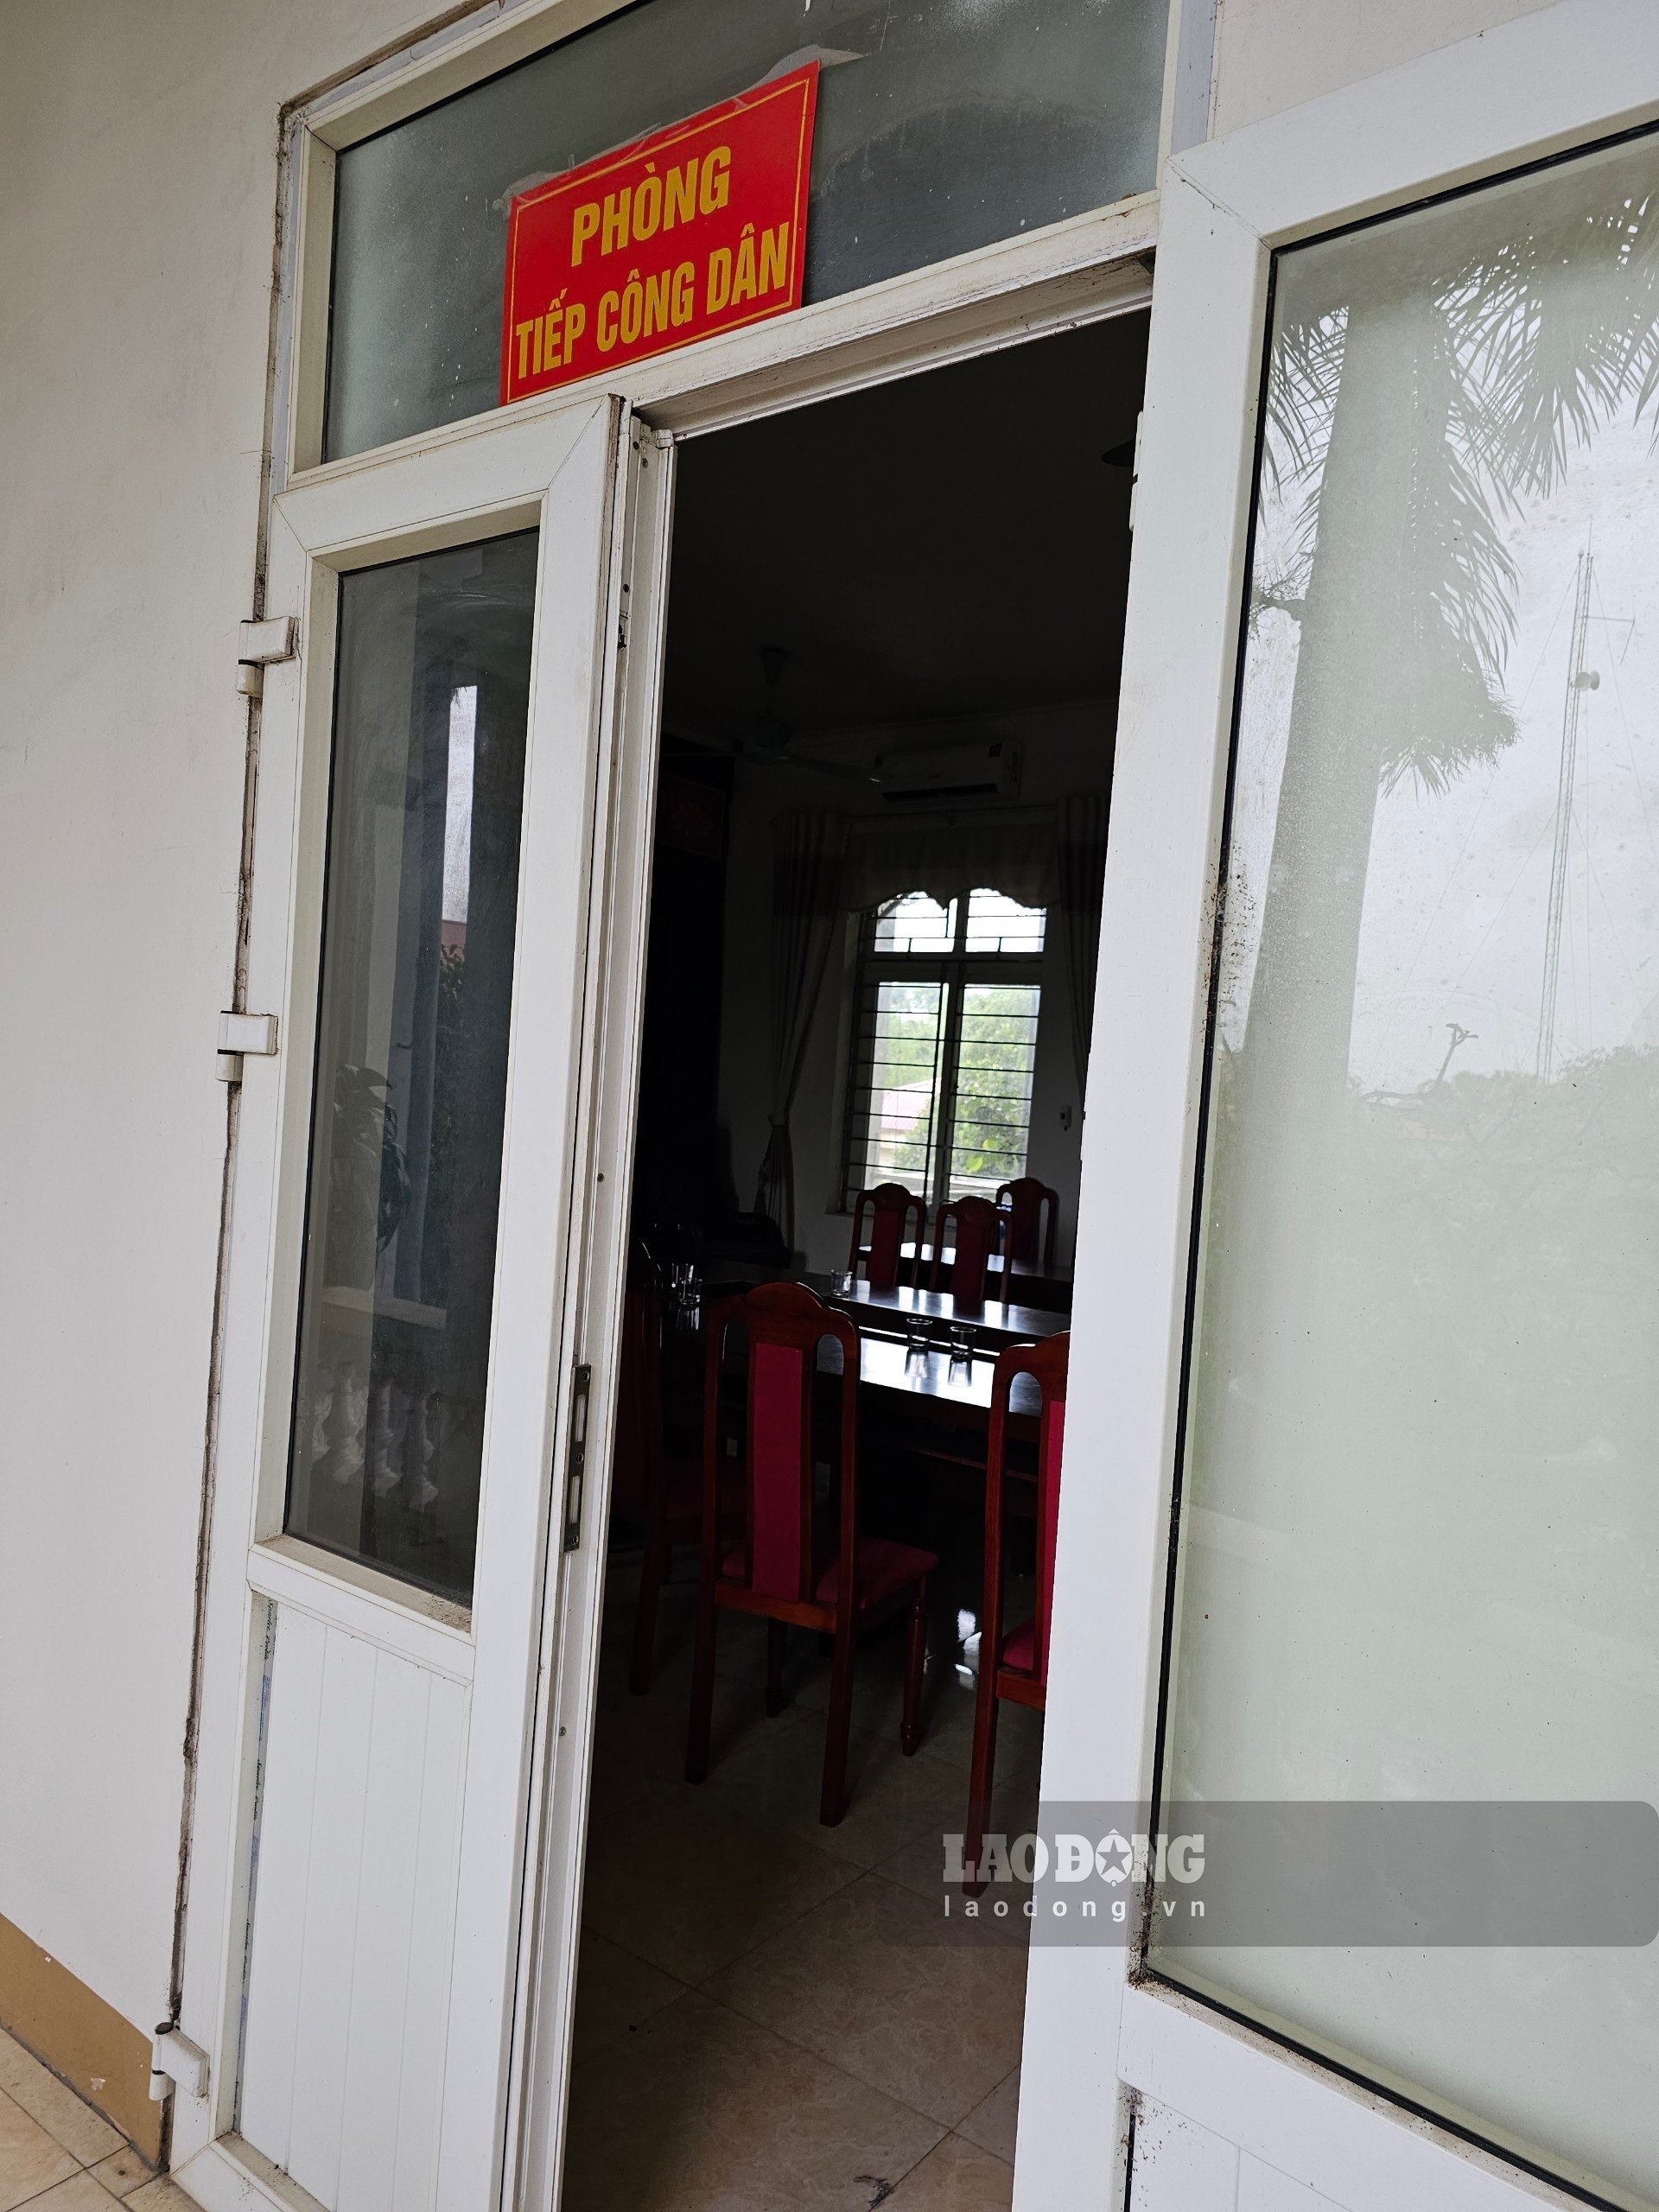 Phòng tiếp công dân của UBND xã Bạch Lưu tắt đèn, không người trực trong giờ làm việc chiều 4.8. Ảnh: Bảo Nguyên